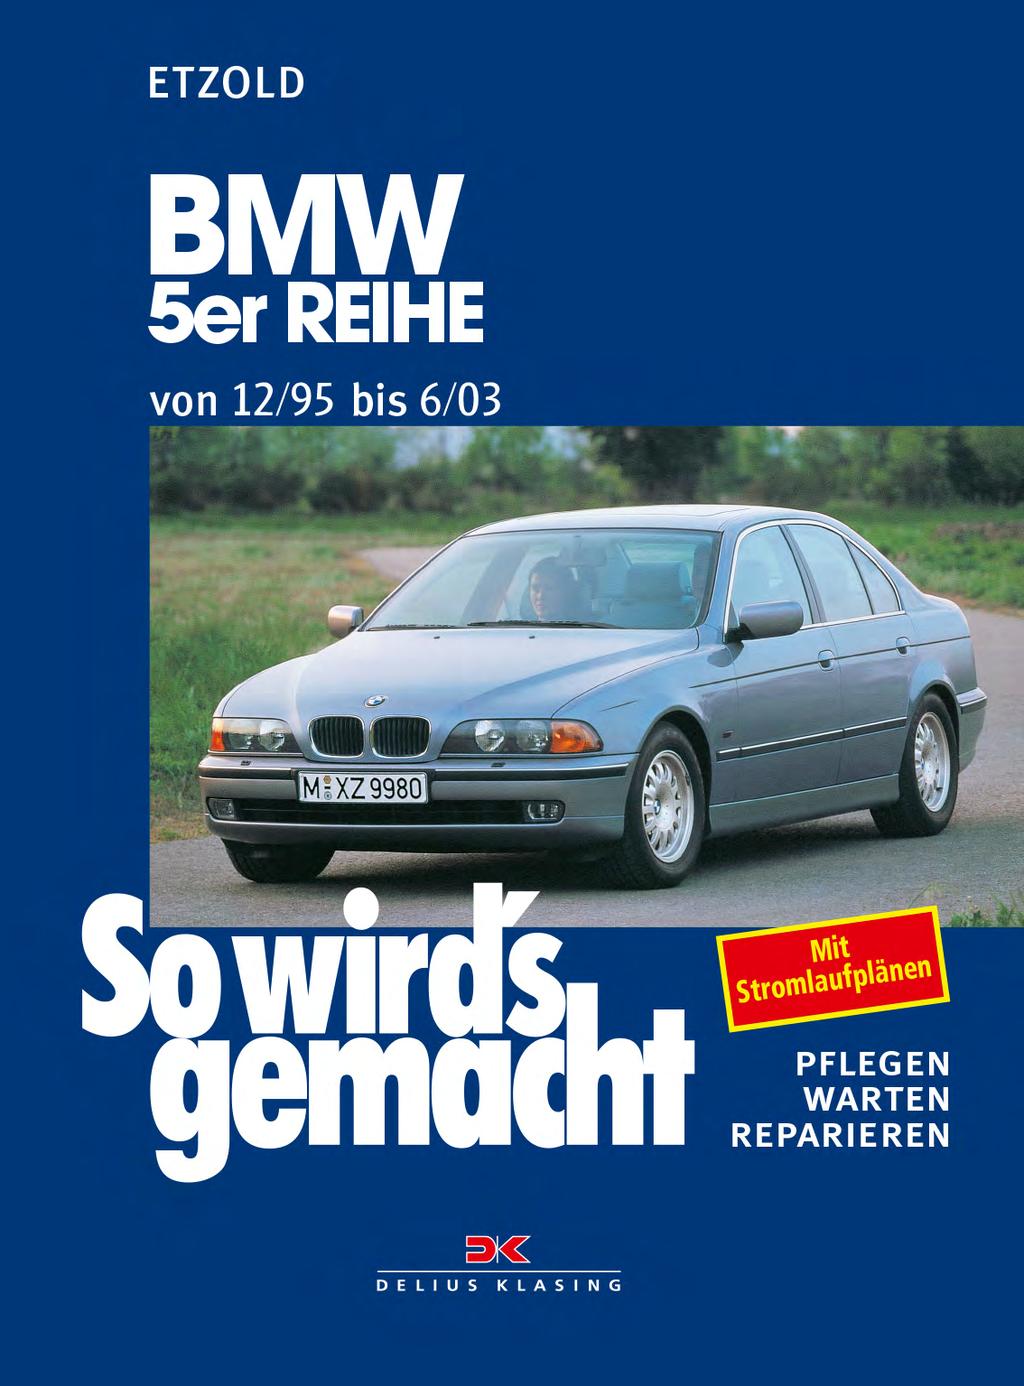 Fahrwerk und Bremsen 95-03 Werkstatthandbuch BMW 5er E39 